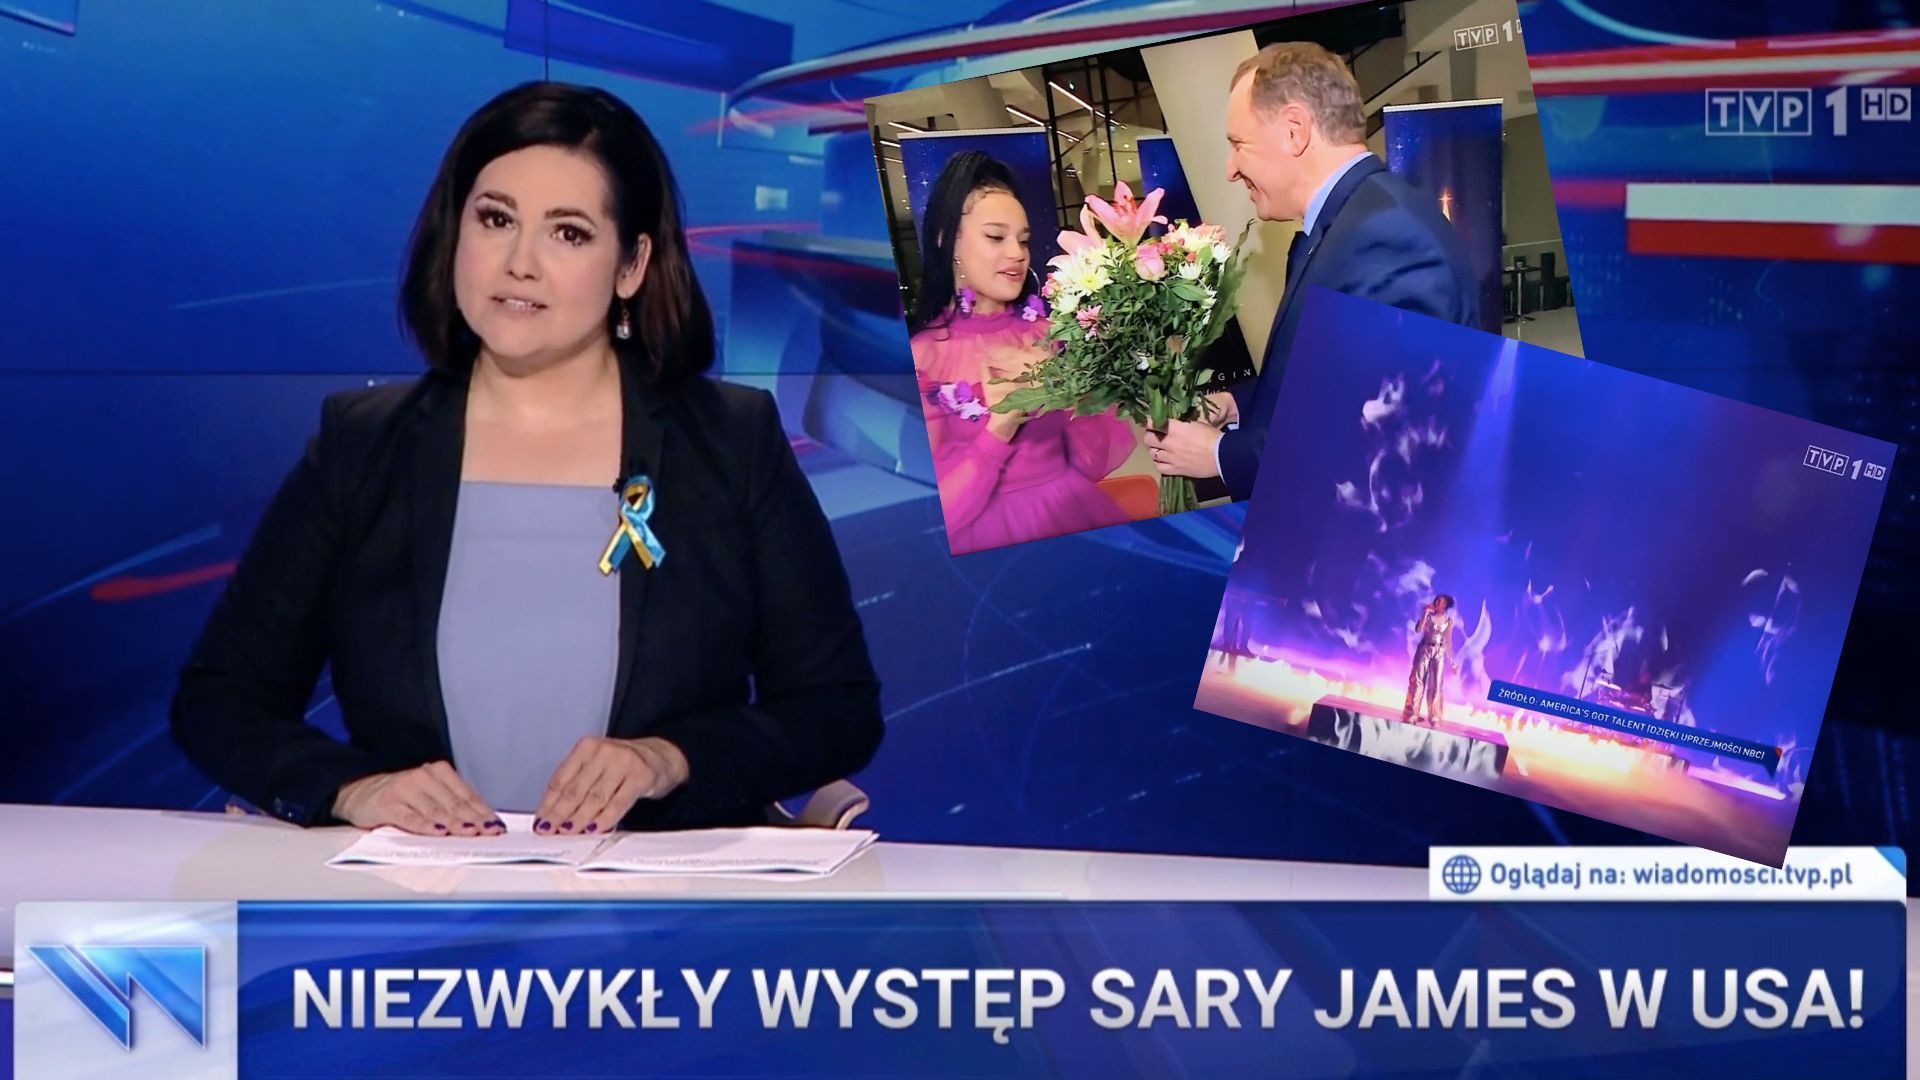 Sara James odniosła sukces dzięki Telewizji Polskiej, "Wiadomości" TVP wszytko wyjaśniły